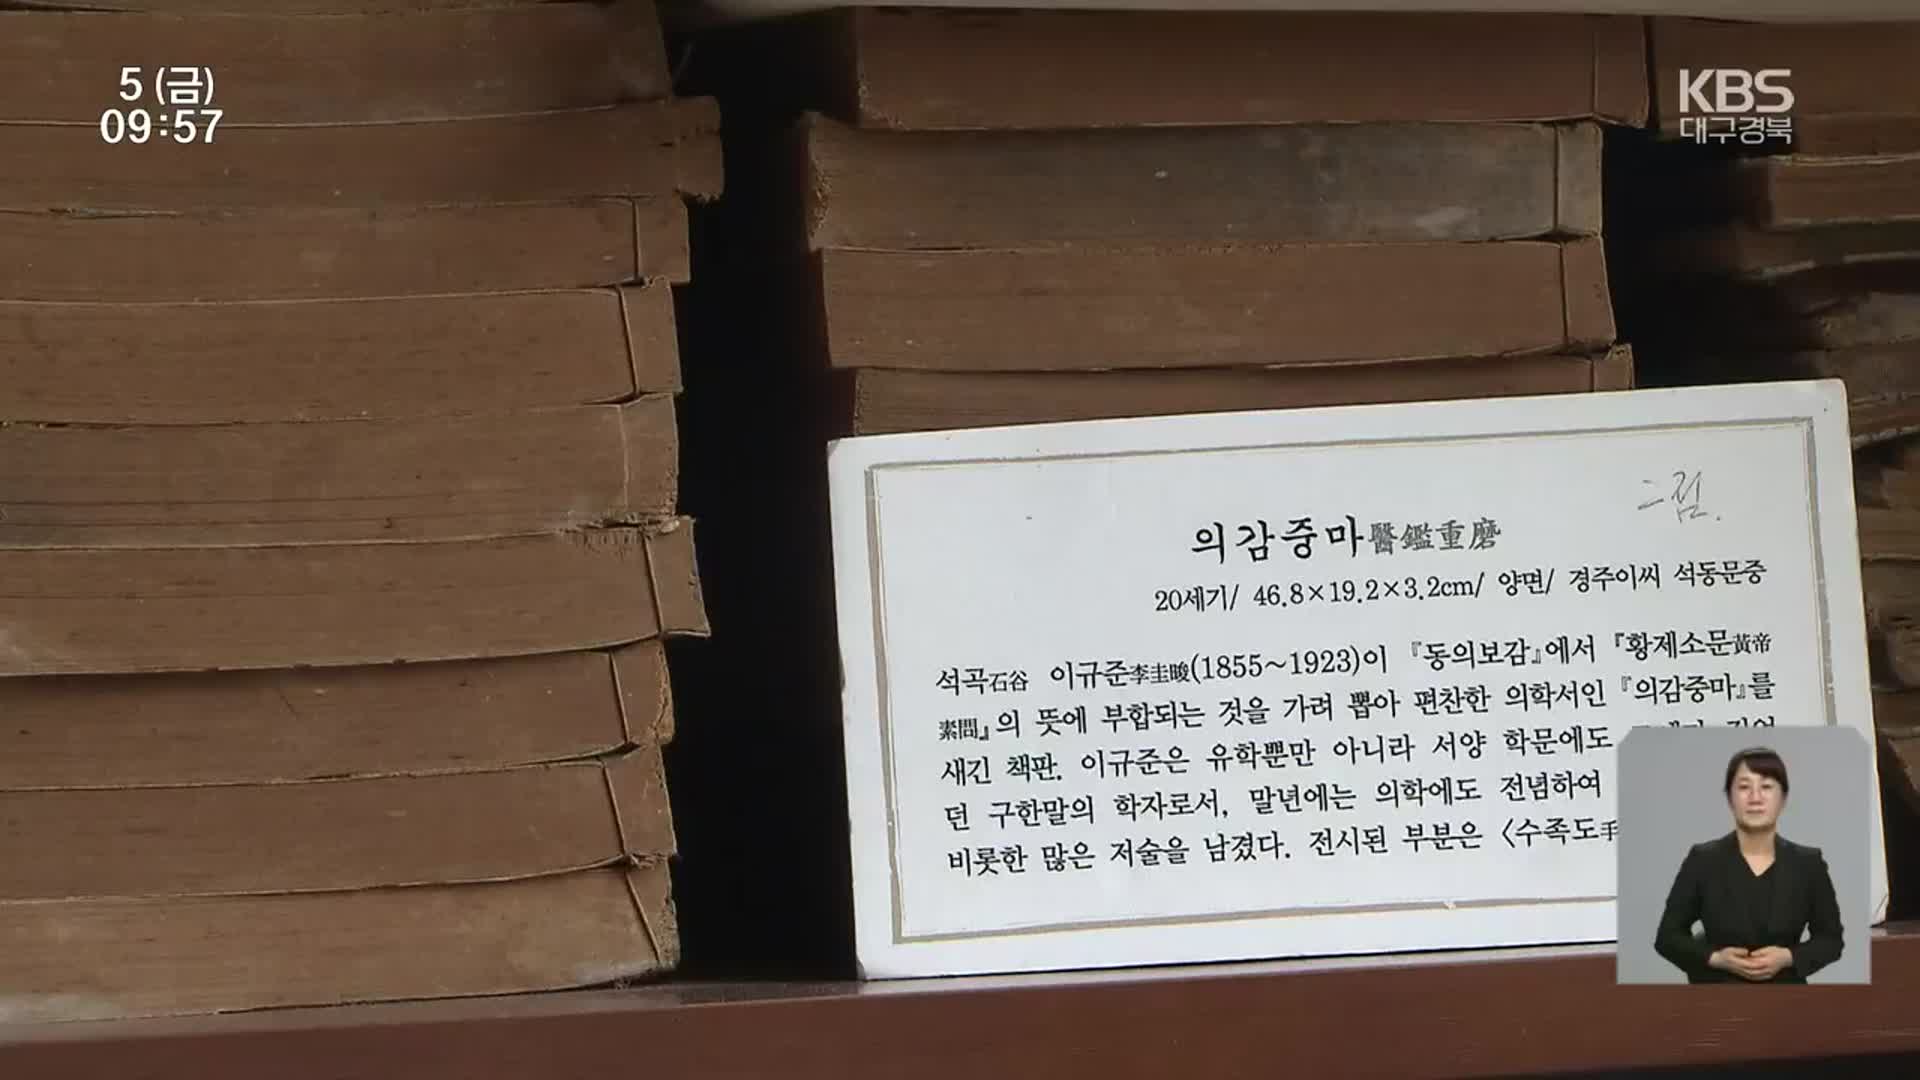 석곡 이규준 선생 재조명…문화도시 품격 제고